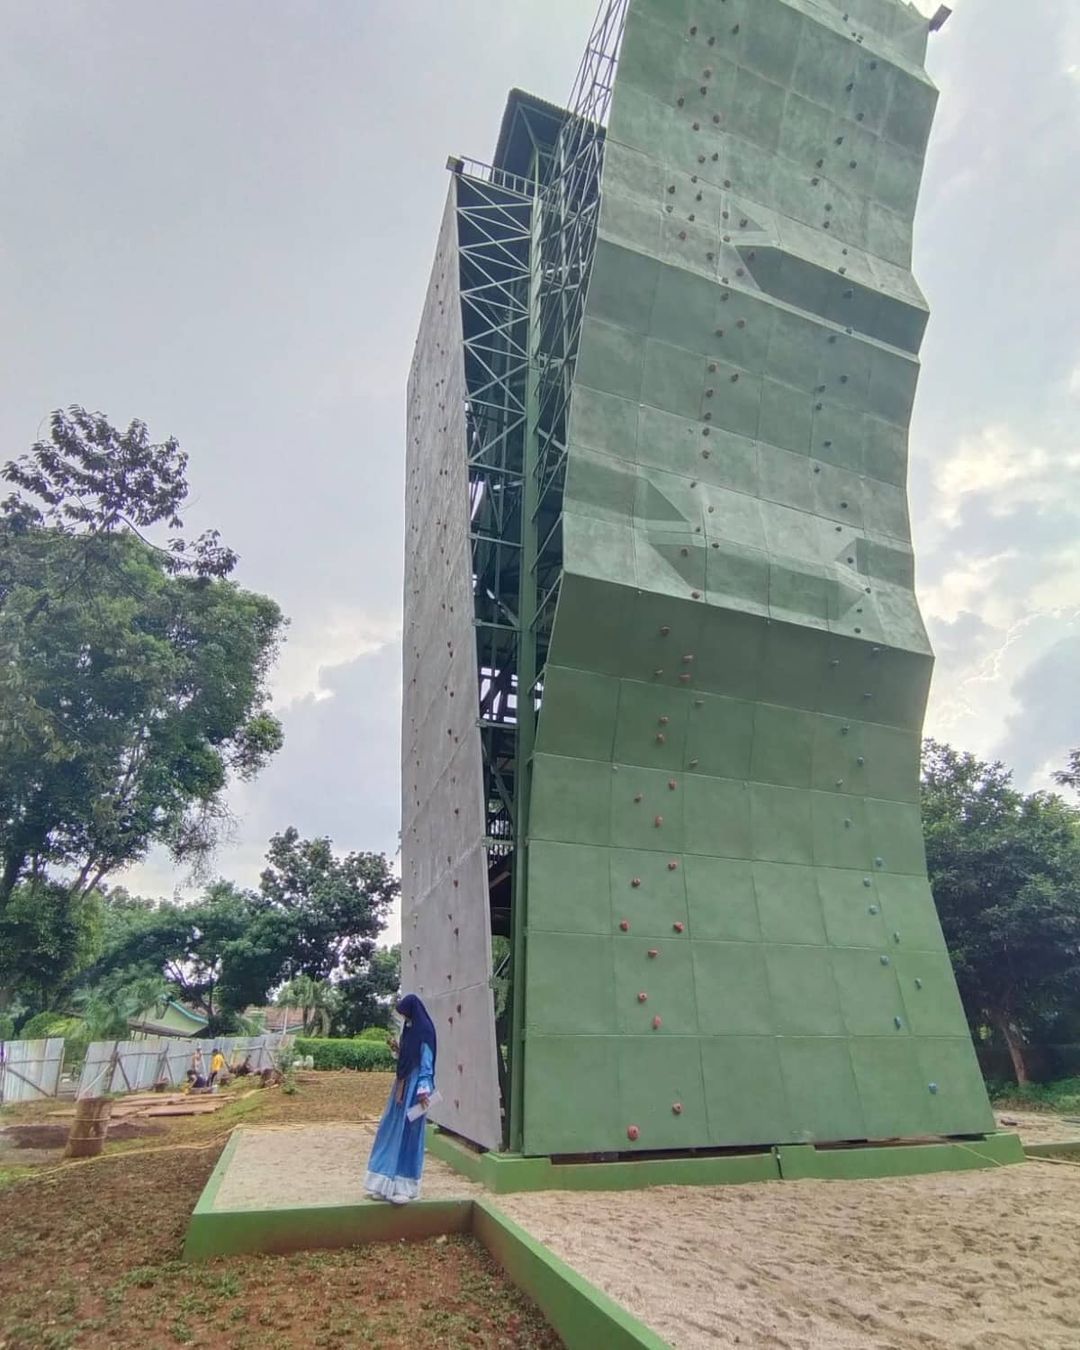 Pembangunan Wall Climbing Menara Serba Guna Tipe Speed Lead Kopassus Group 3 Cijantung Jakarta Timur